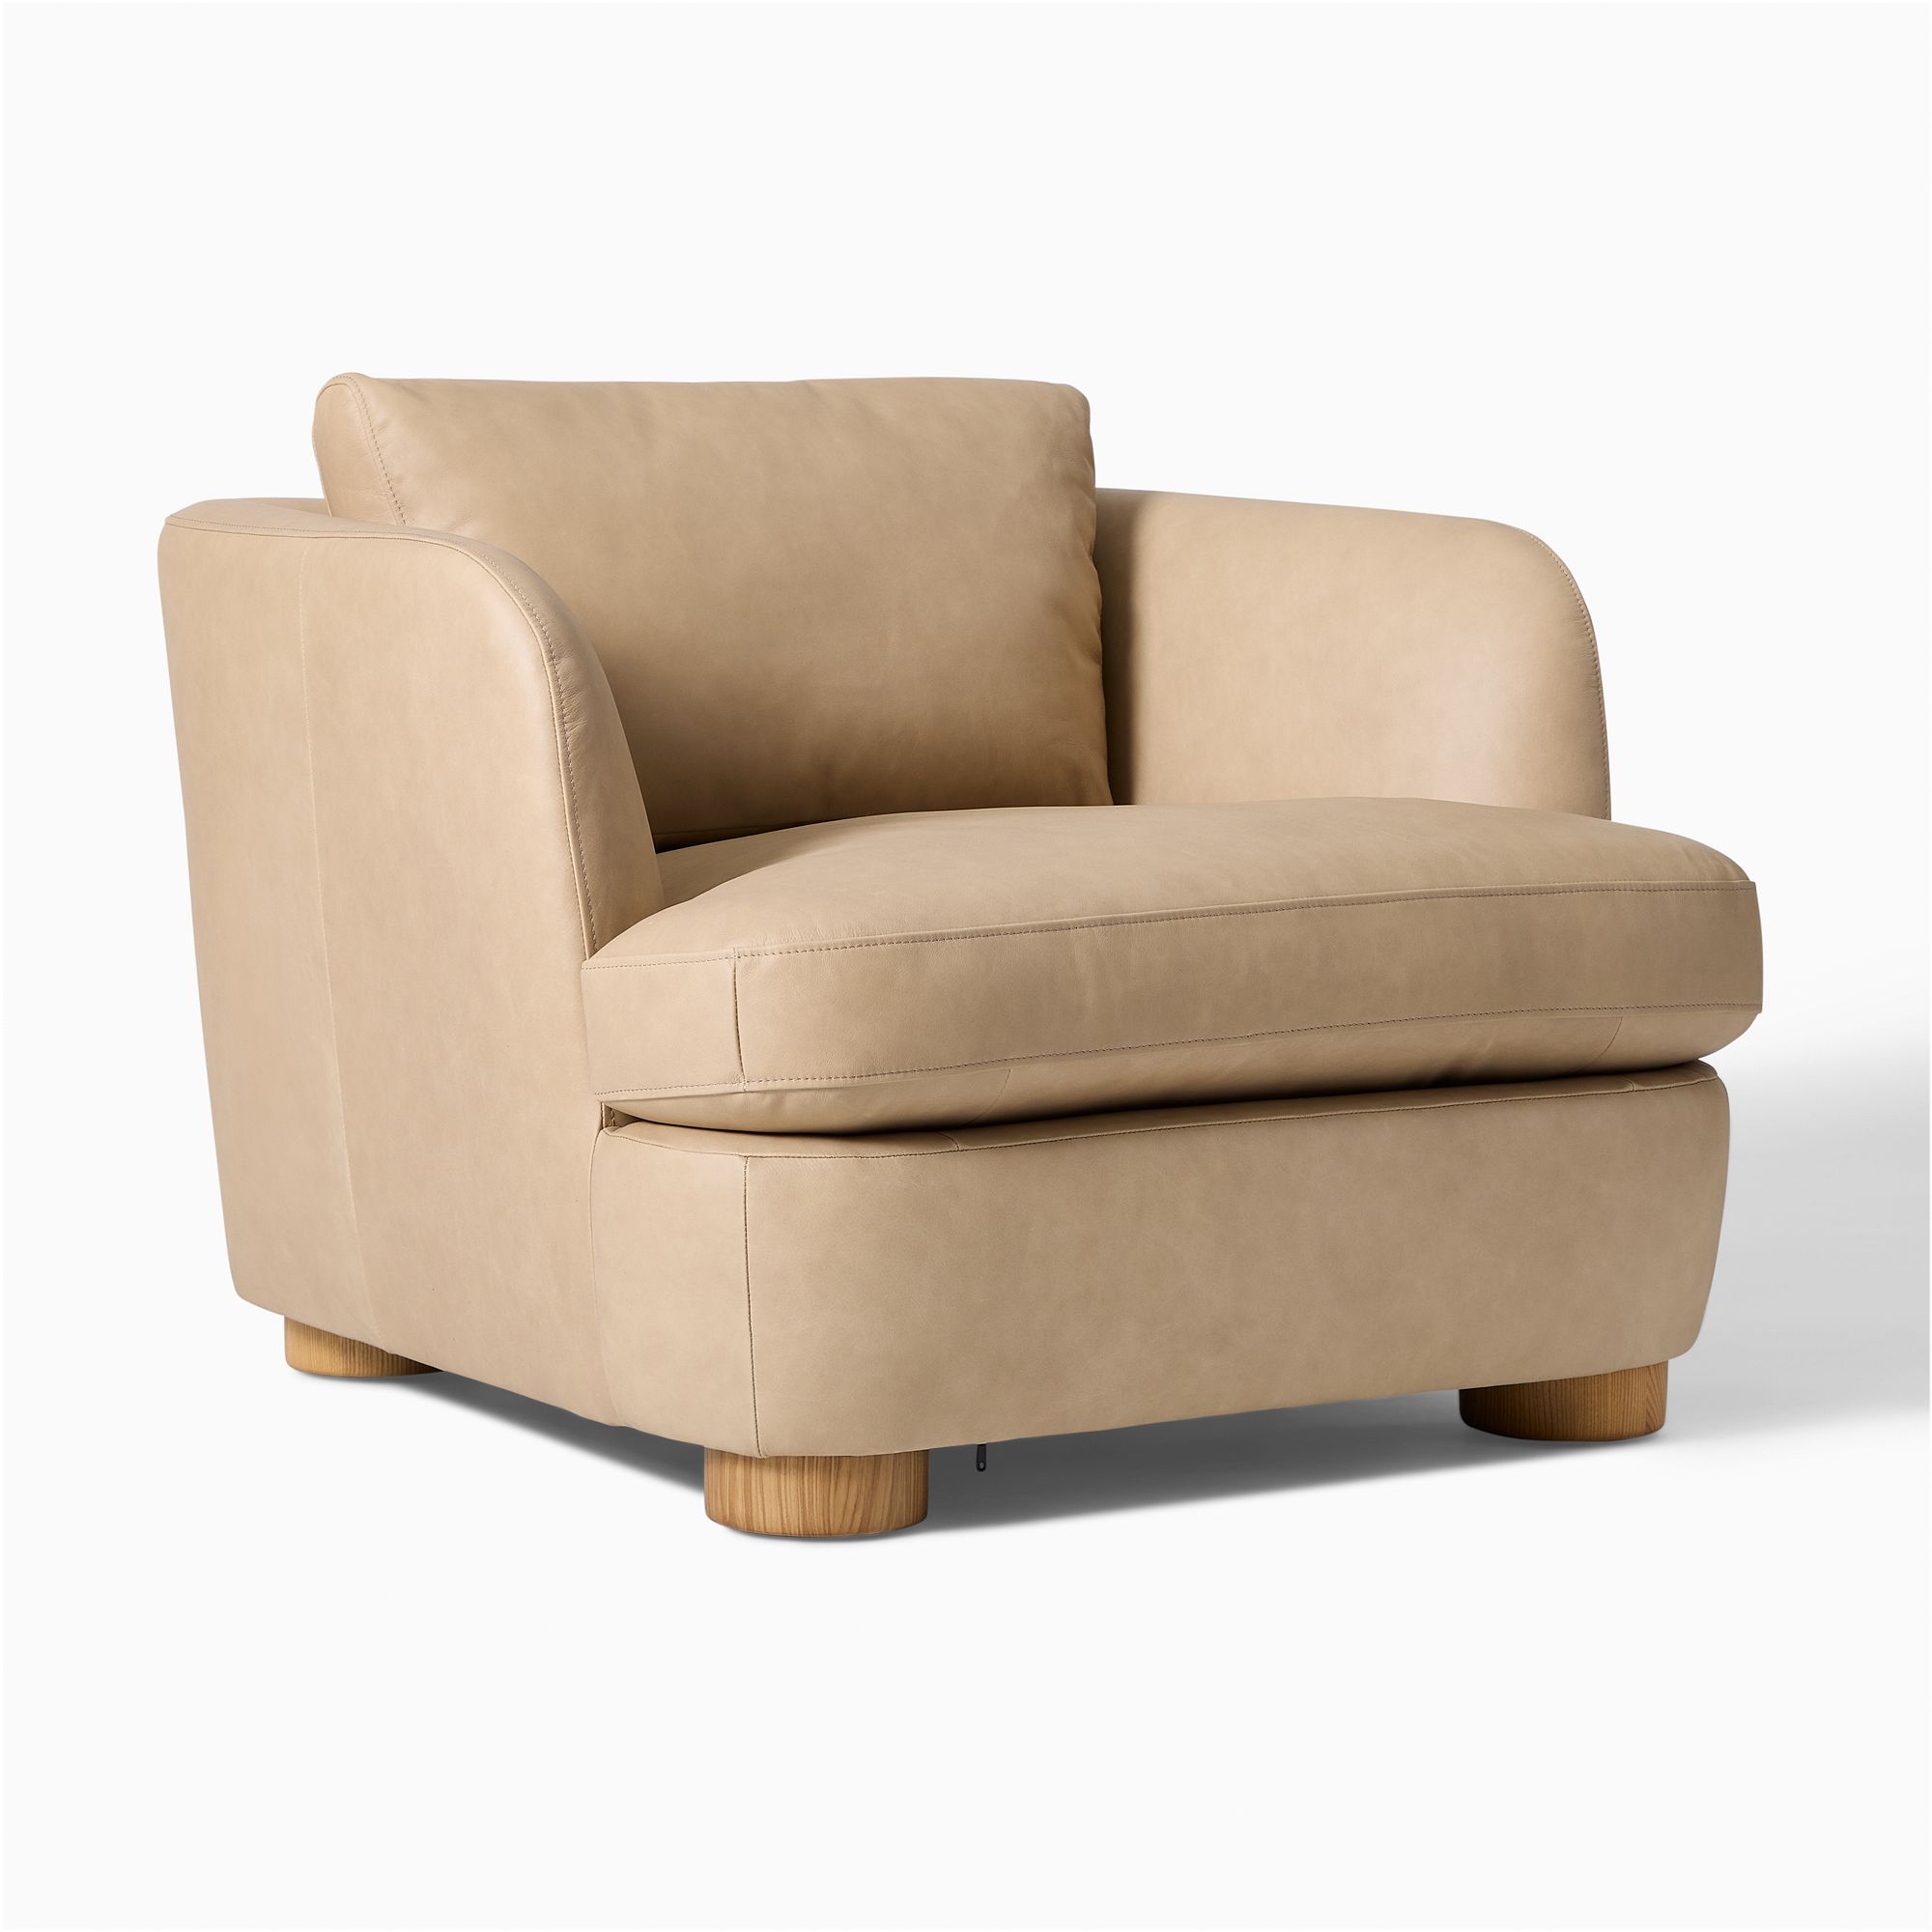 Leroy Leather Chair | West Elm